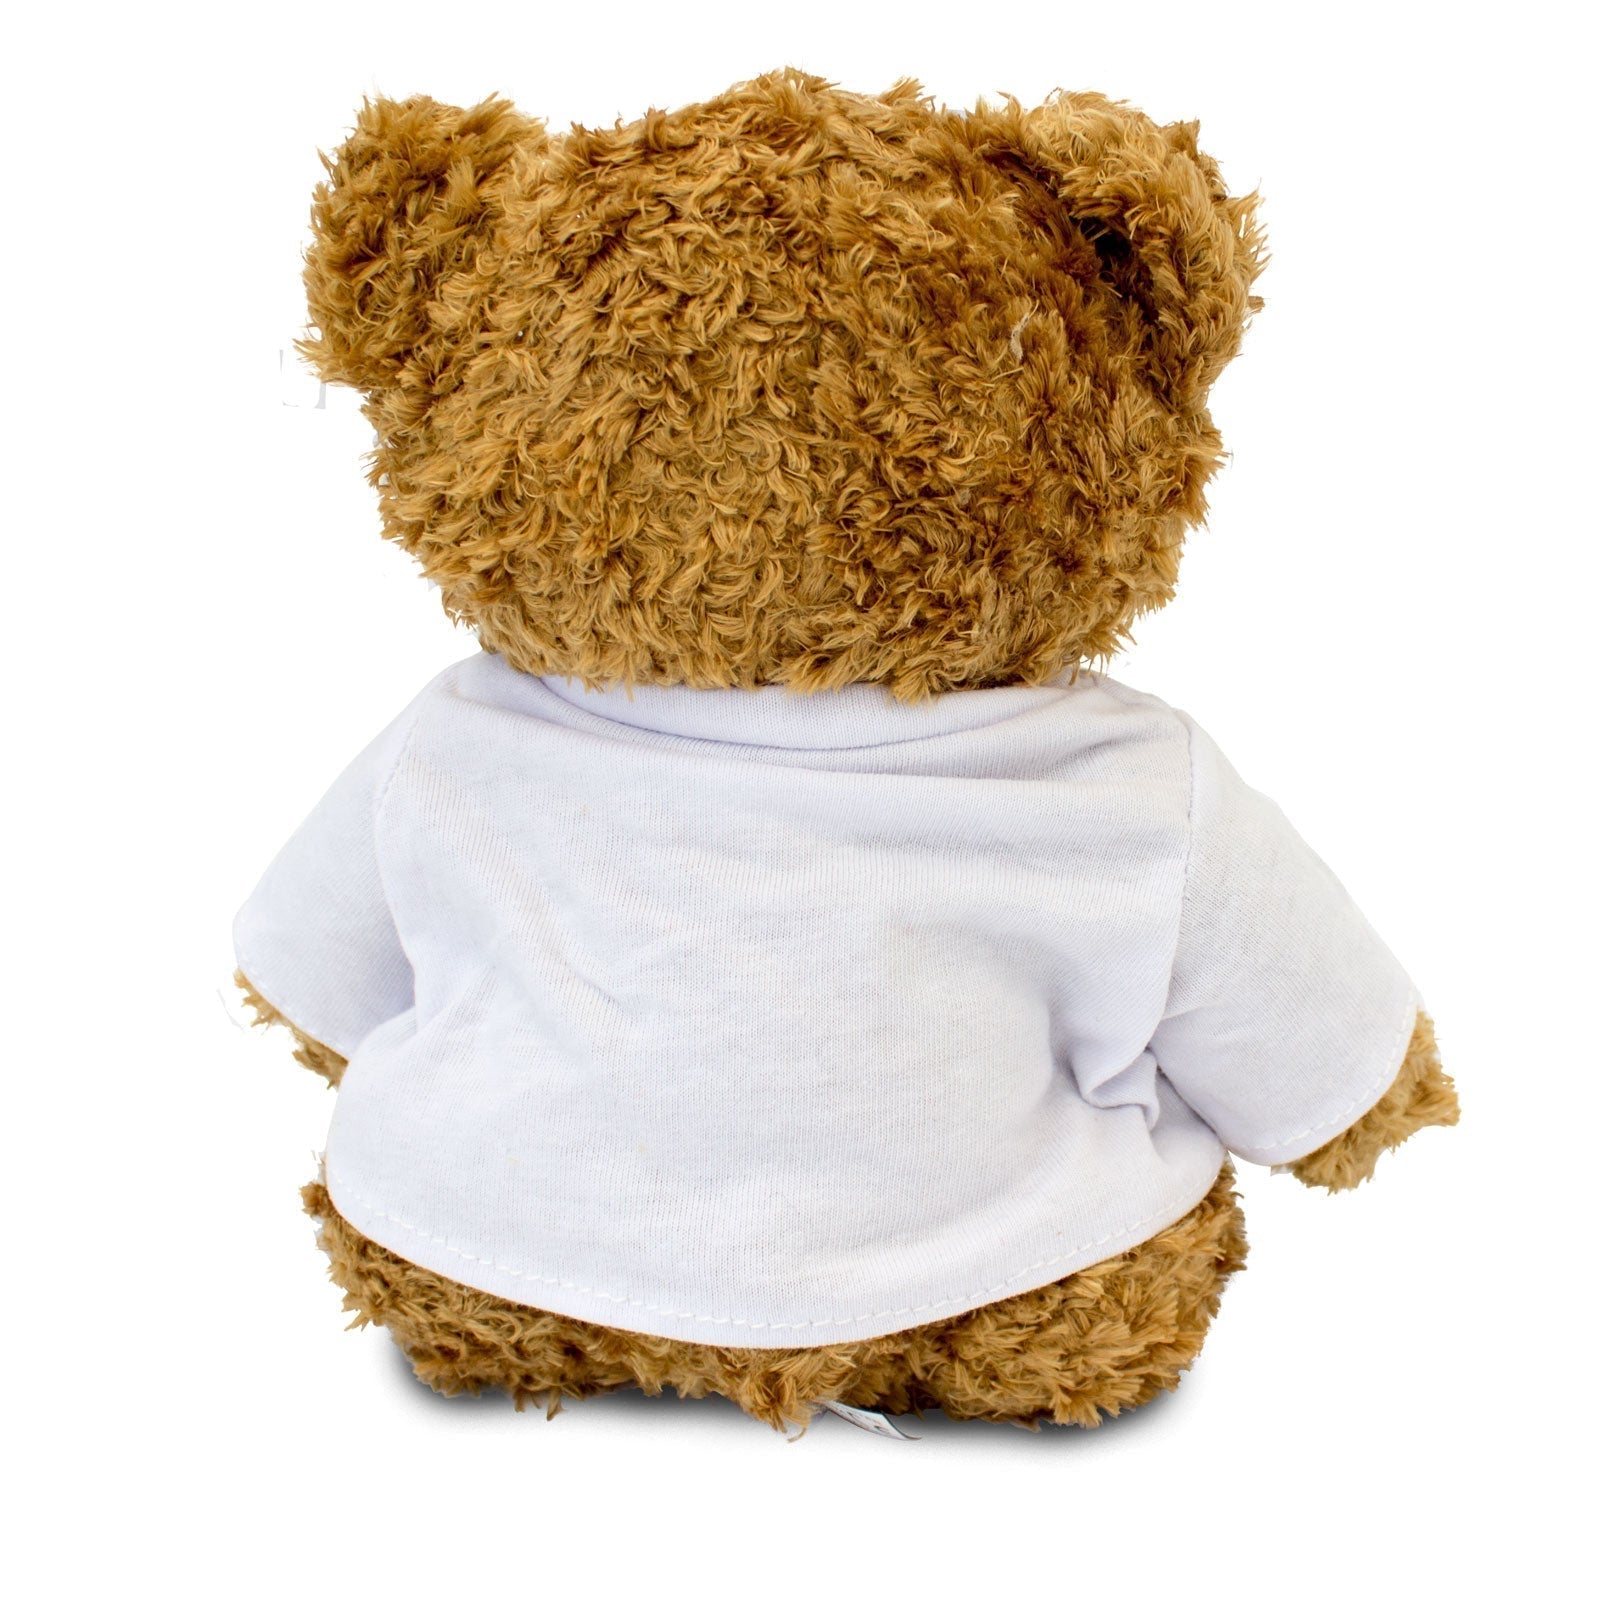 The Greatest Online Tutor Ever - Teddy Bear